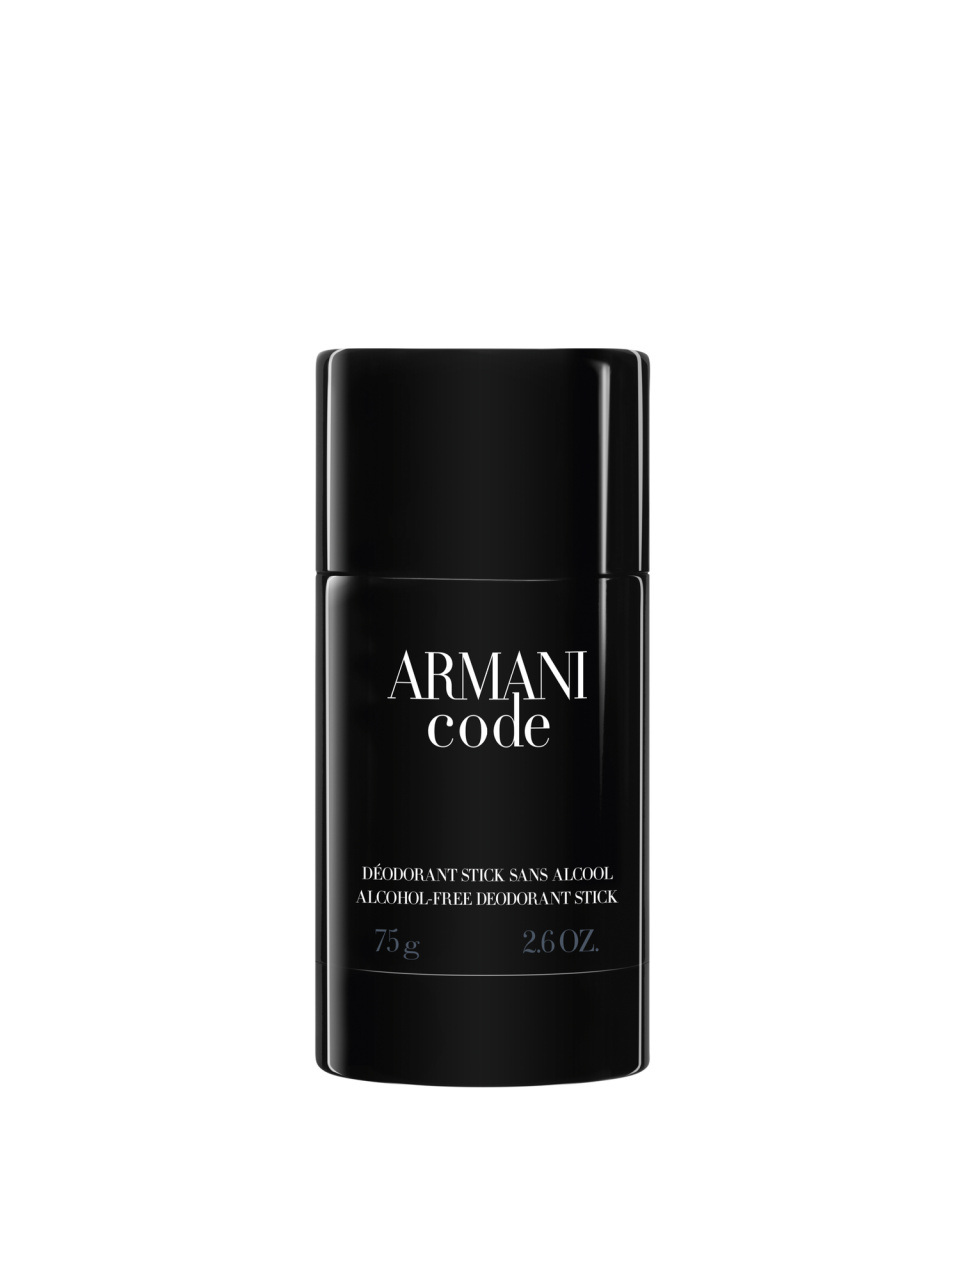 Giorgio Armani Armani Code Deodorant Stick 75 ml null - onesize - 1